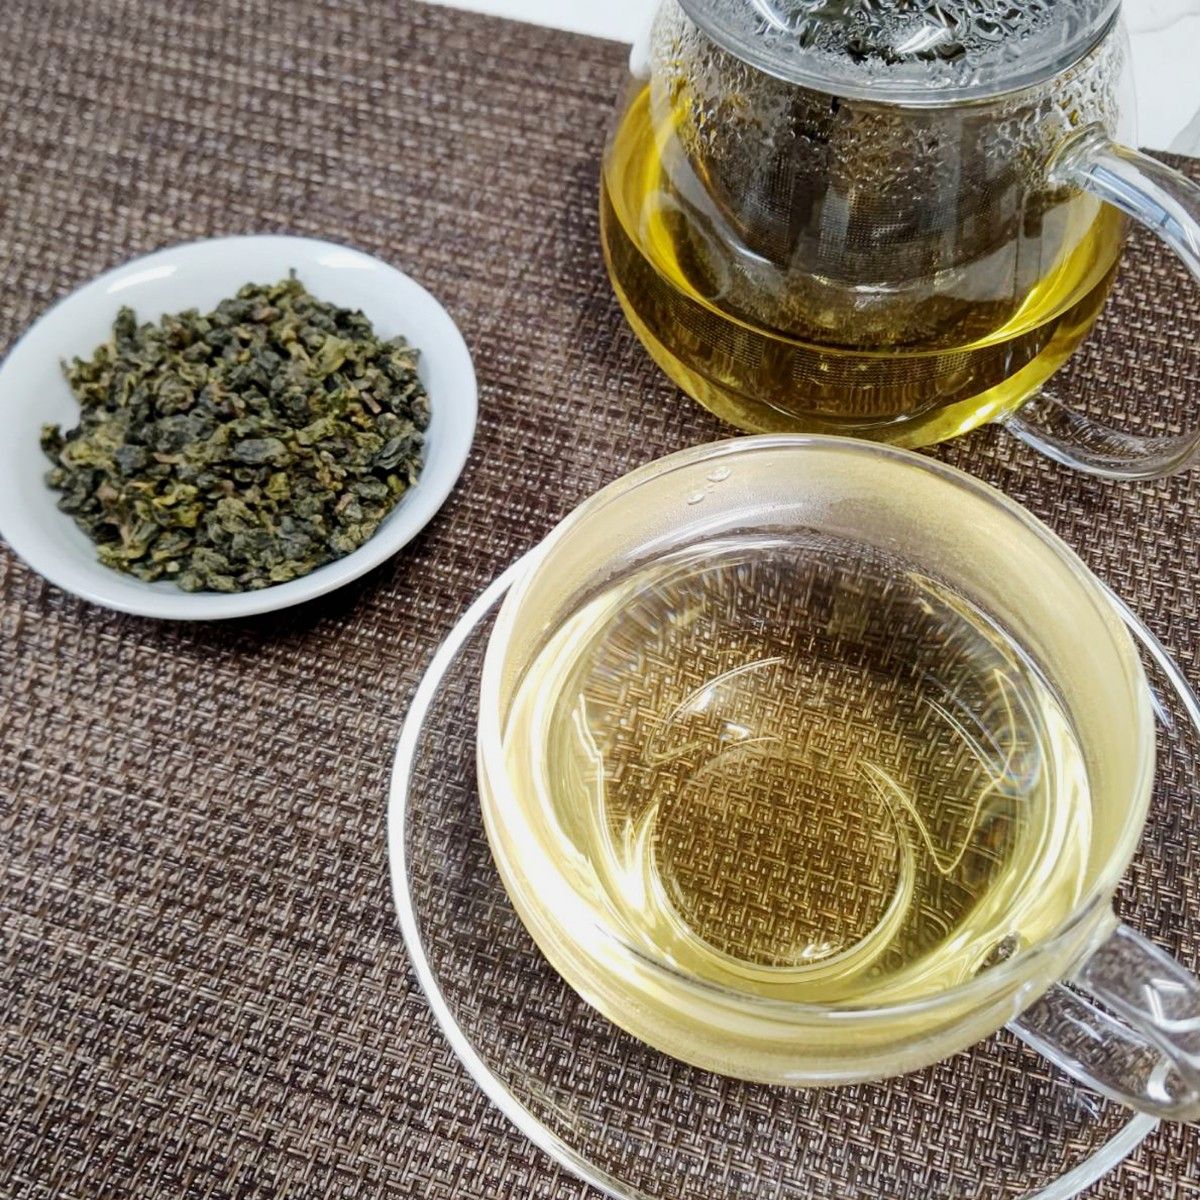 台湾烏龍茶 １級 凍頂烏龍茶 145g